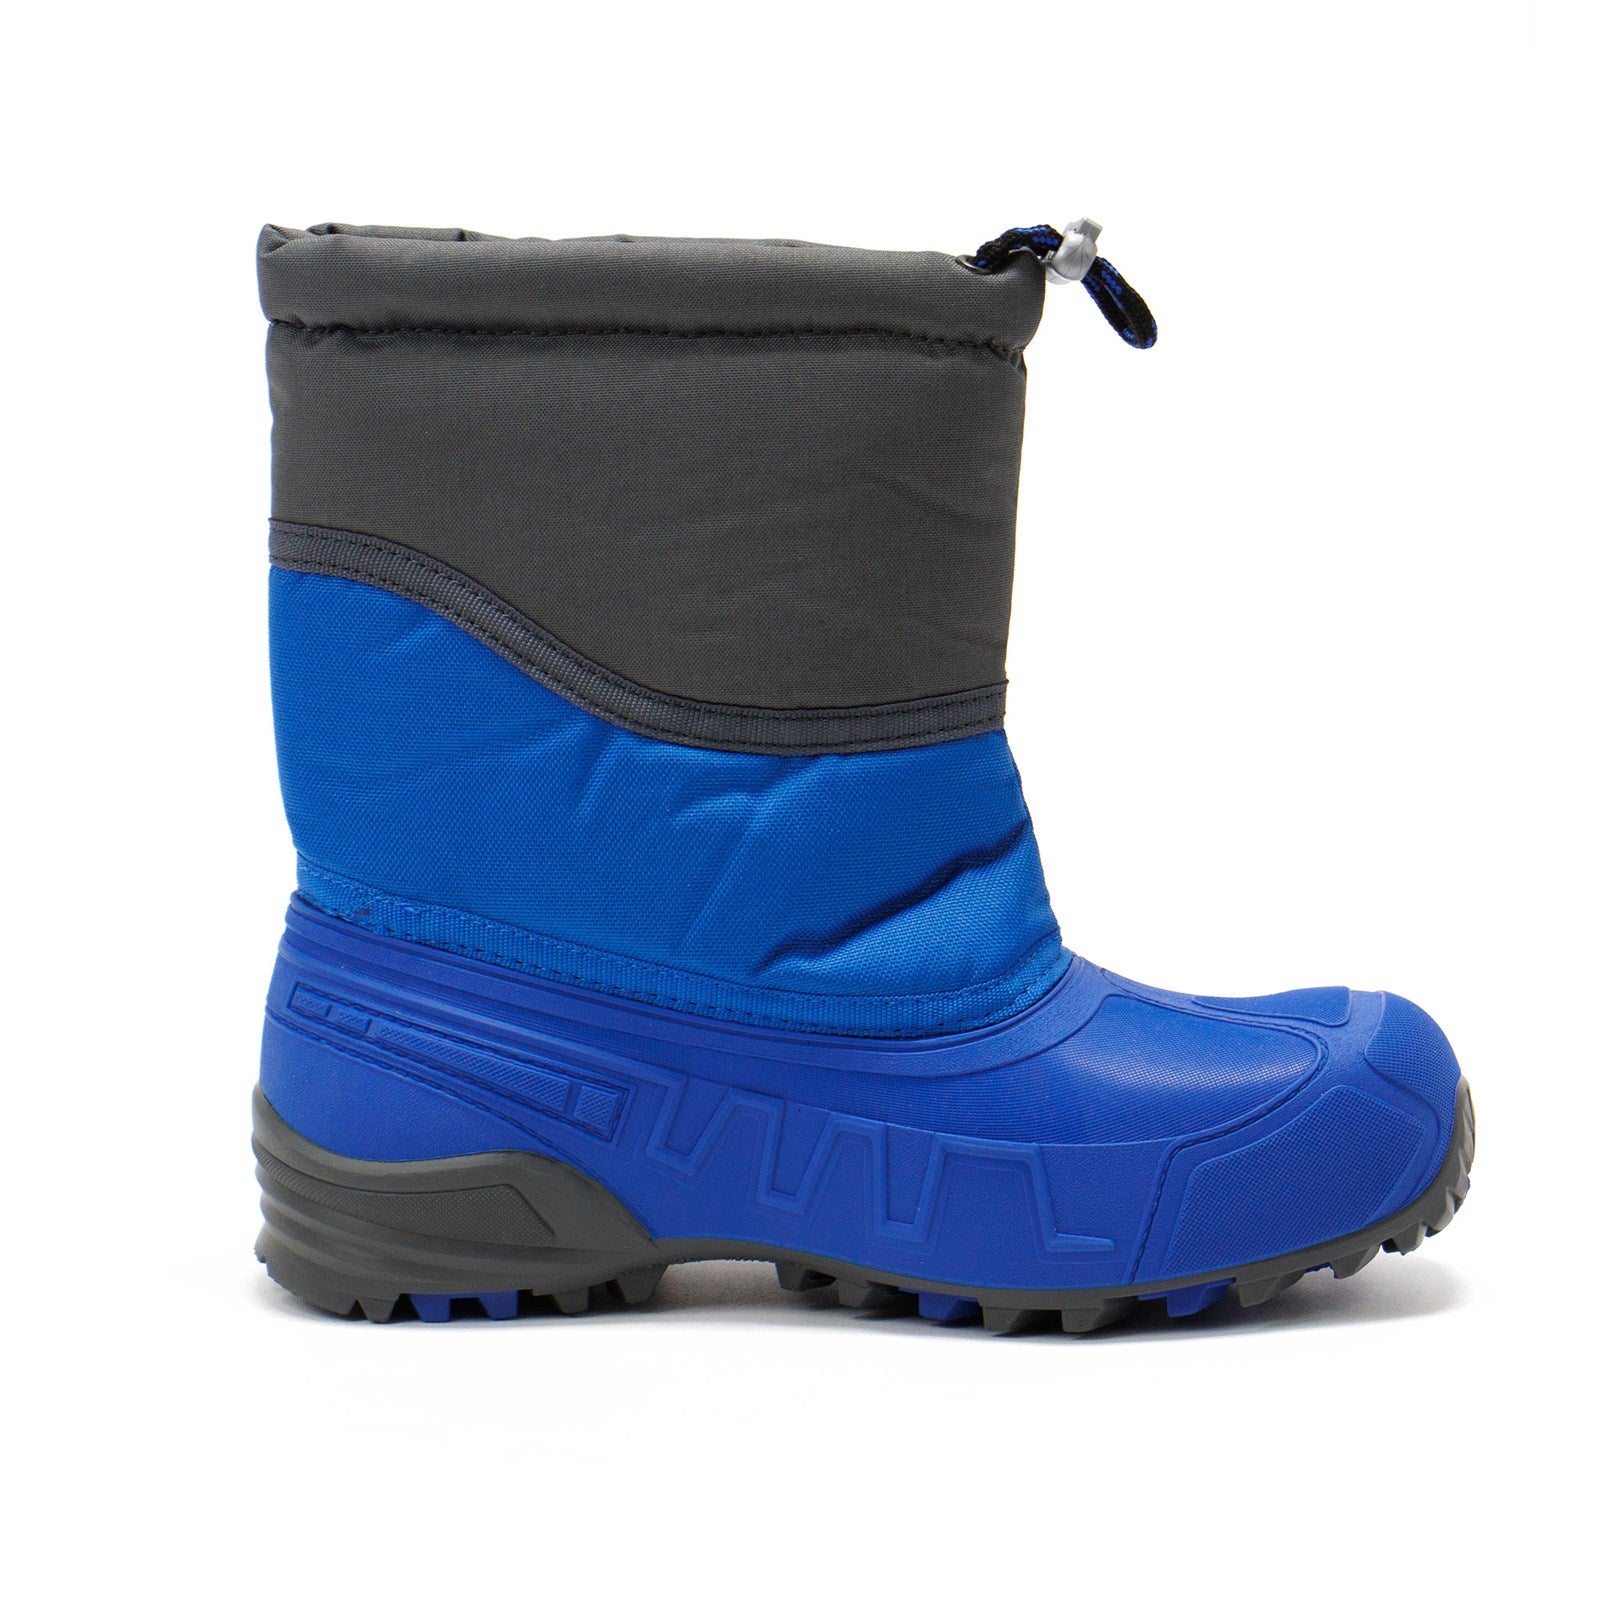 Boatilus Boy Hybrid03 Waterproof Boots